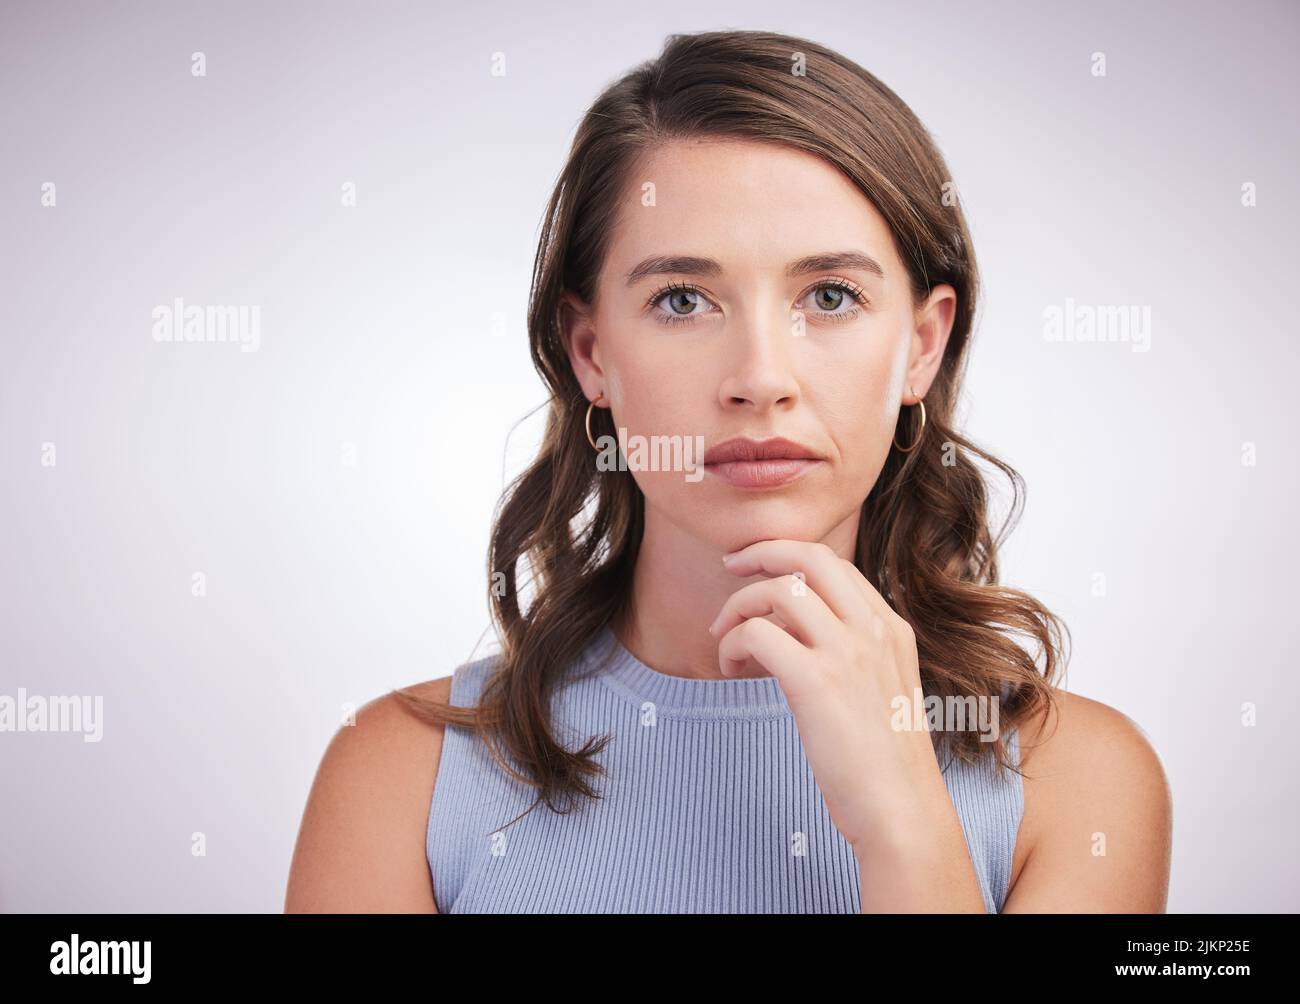 Ich bin mir immer noch ein wenig unsicher... Studioportrait einer jungen Frau, die vor grauem Hintergrund nachdenklich aussieht. Stockfoto